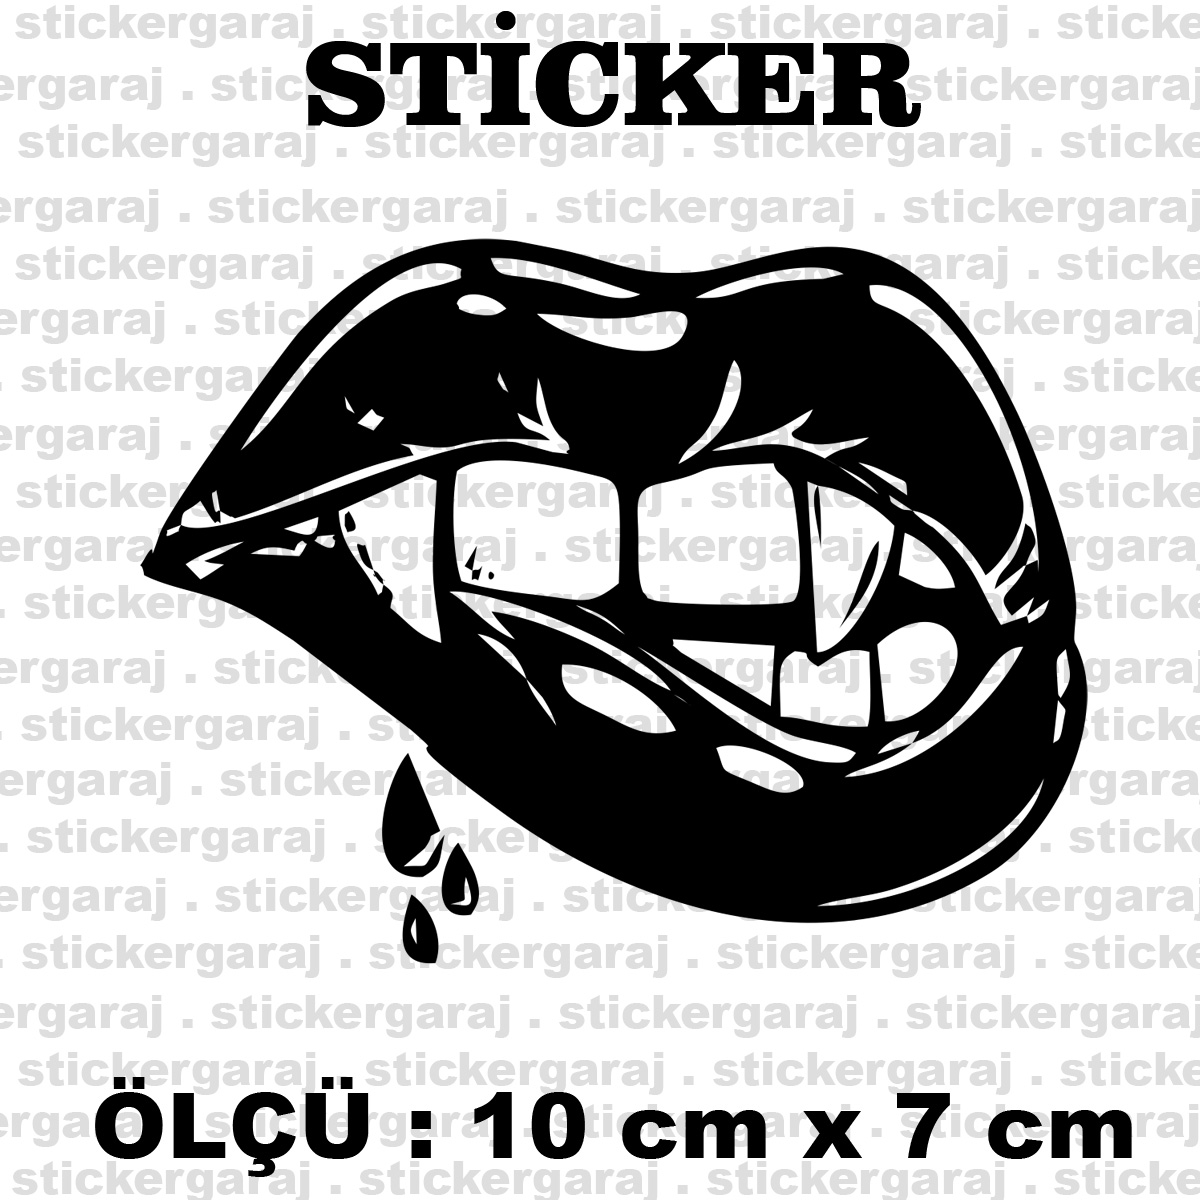 dudak 10 7 - Dudak vampir kadın sticker